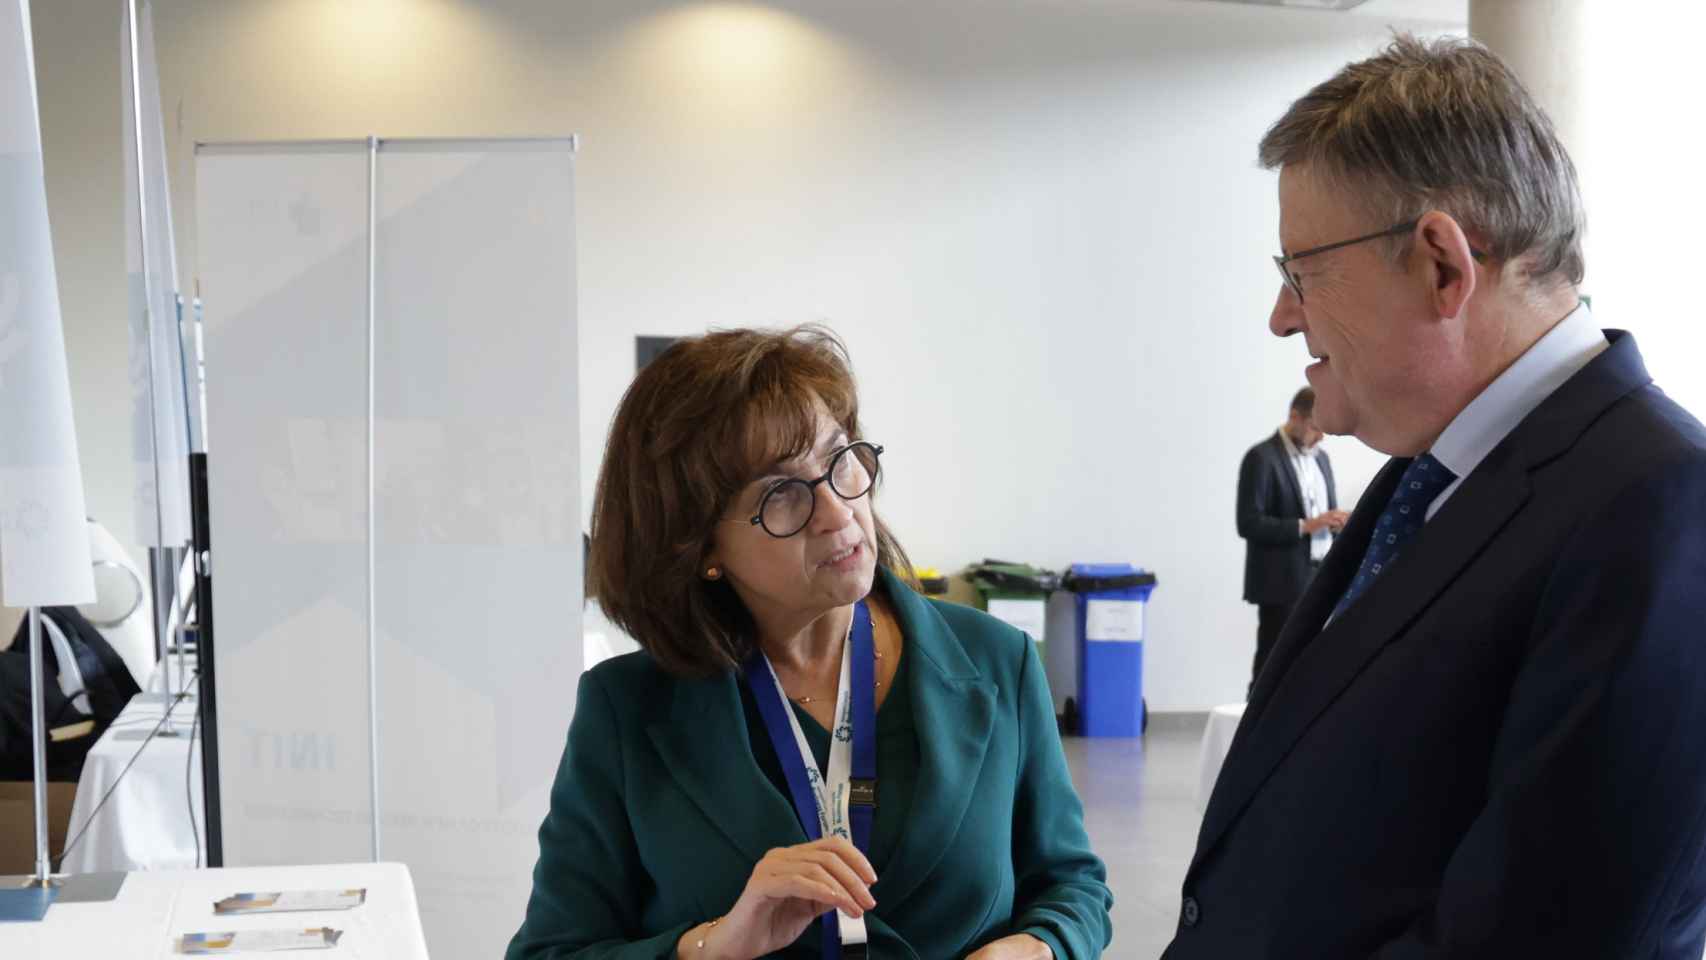 Blanca Marín, directora general del Aeropuerto de Castellón, acompaña a Ximo Puig, presidente de la Generalitat Valenciana, en su visita al 'showroom' del congreso.